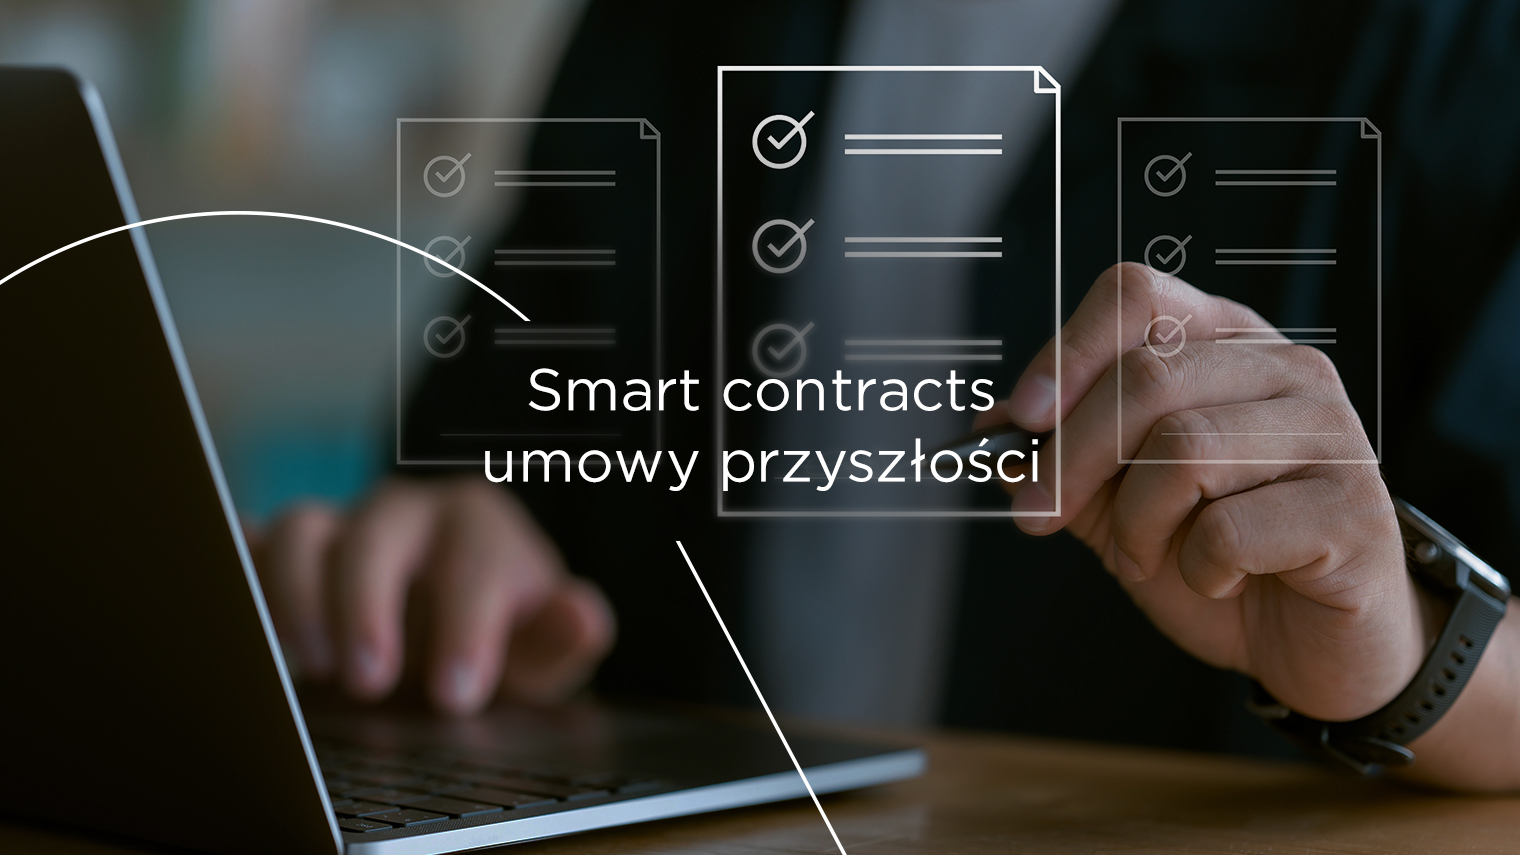 Smart contracts &#8211; umowy przyszłości